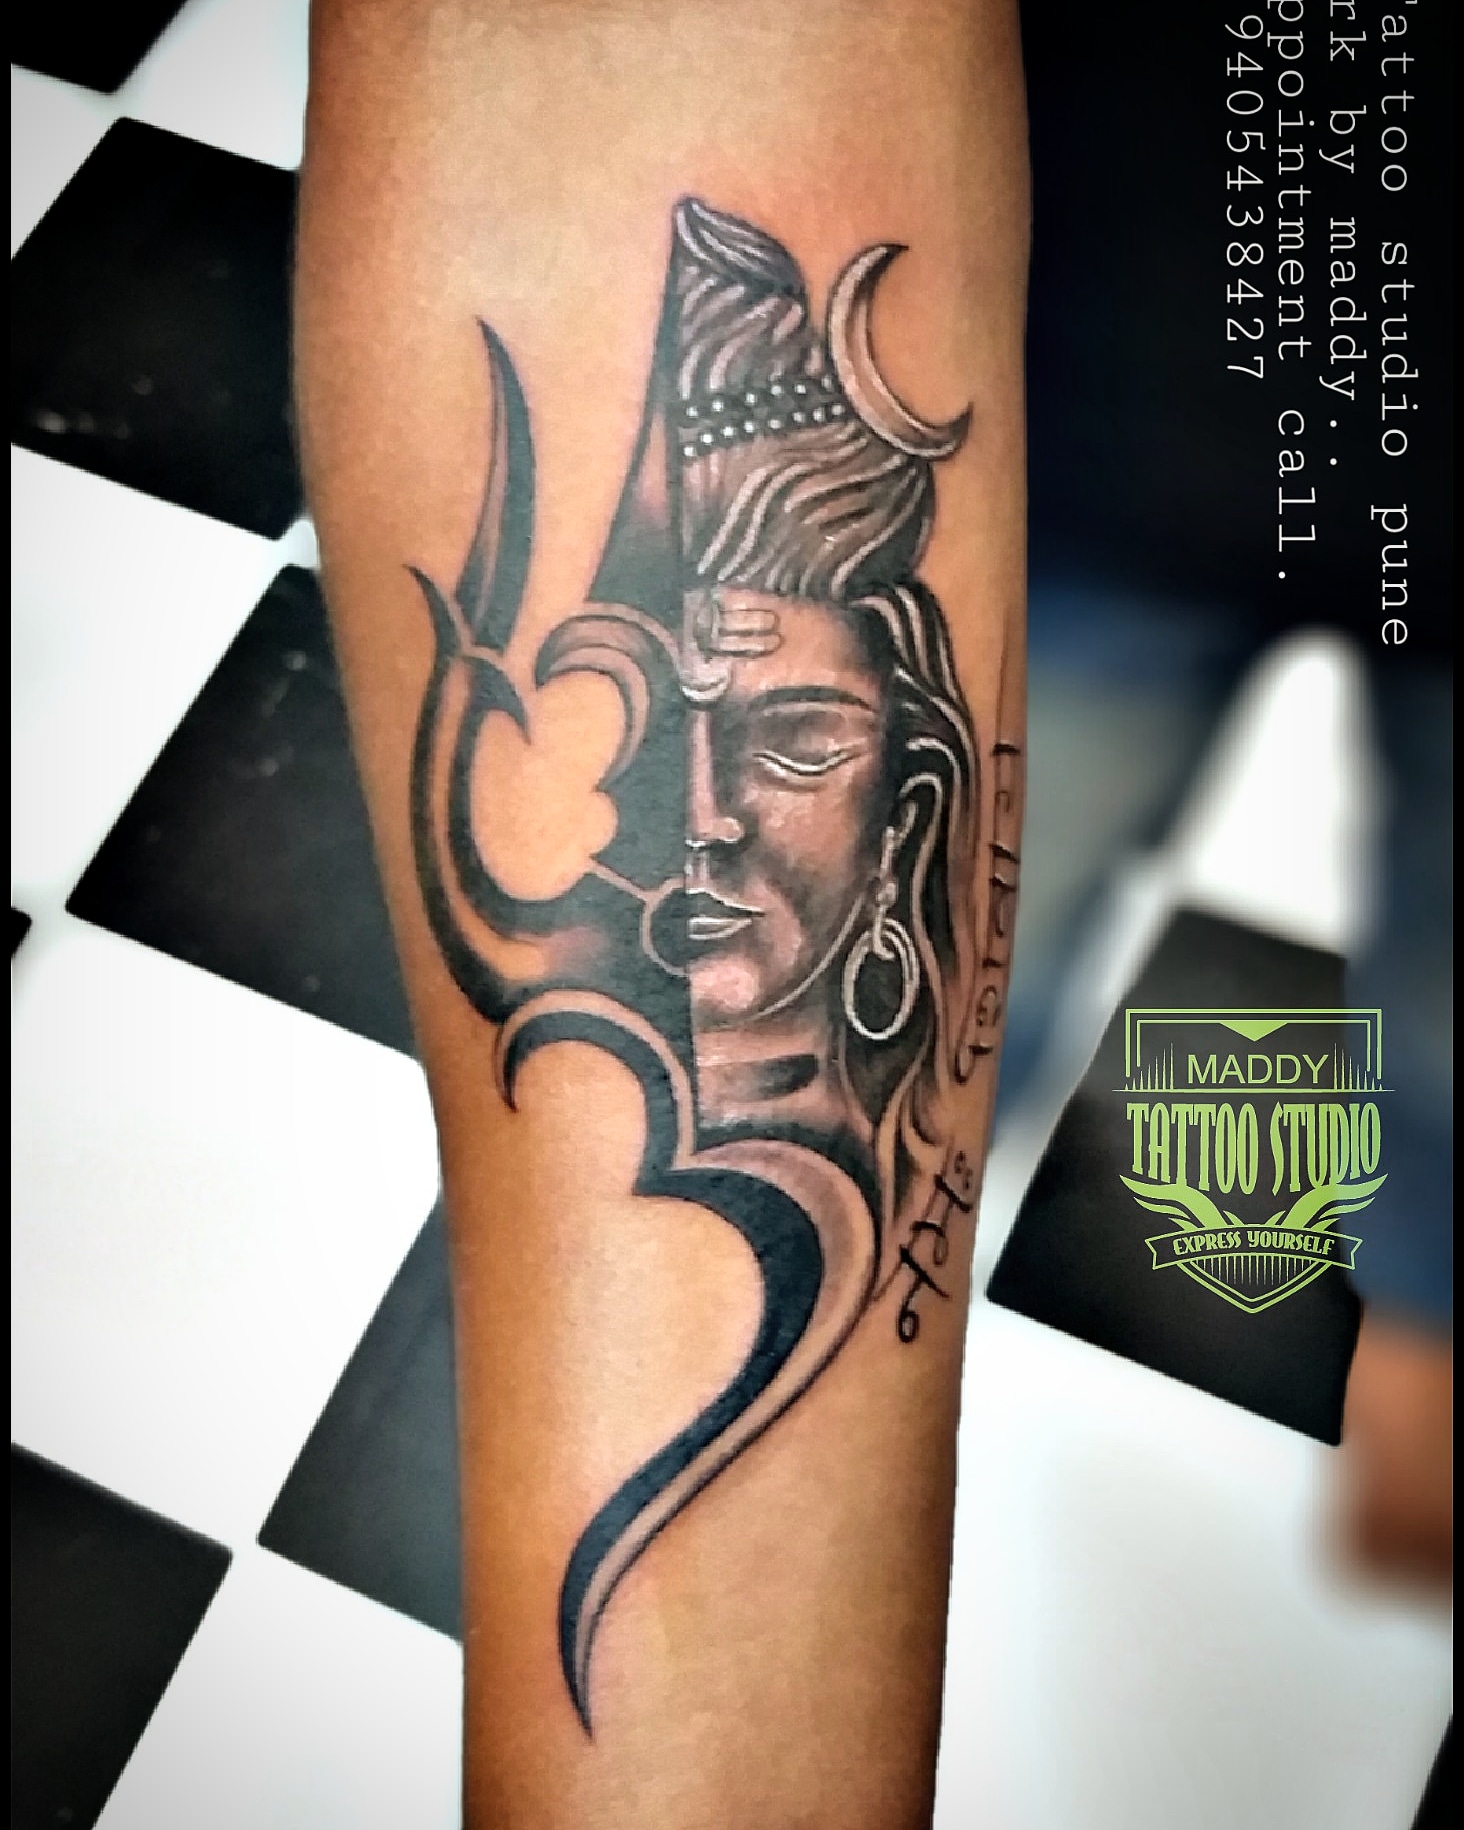 Tattoo1960 Studio | Pune's Best Tattoo Artists | Famous tattoo artists,  Tattoos, Cool tattoos